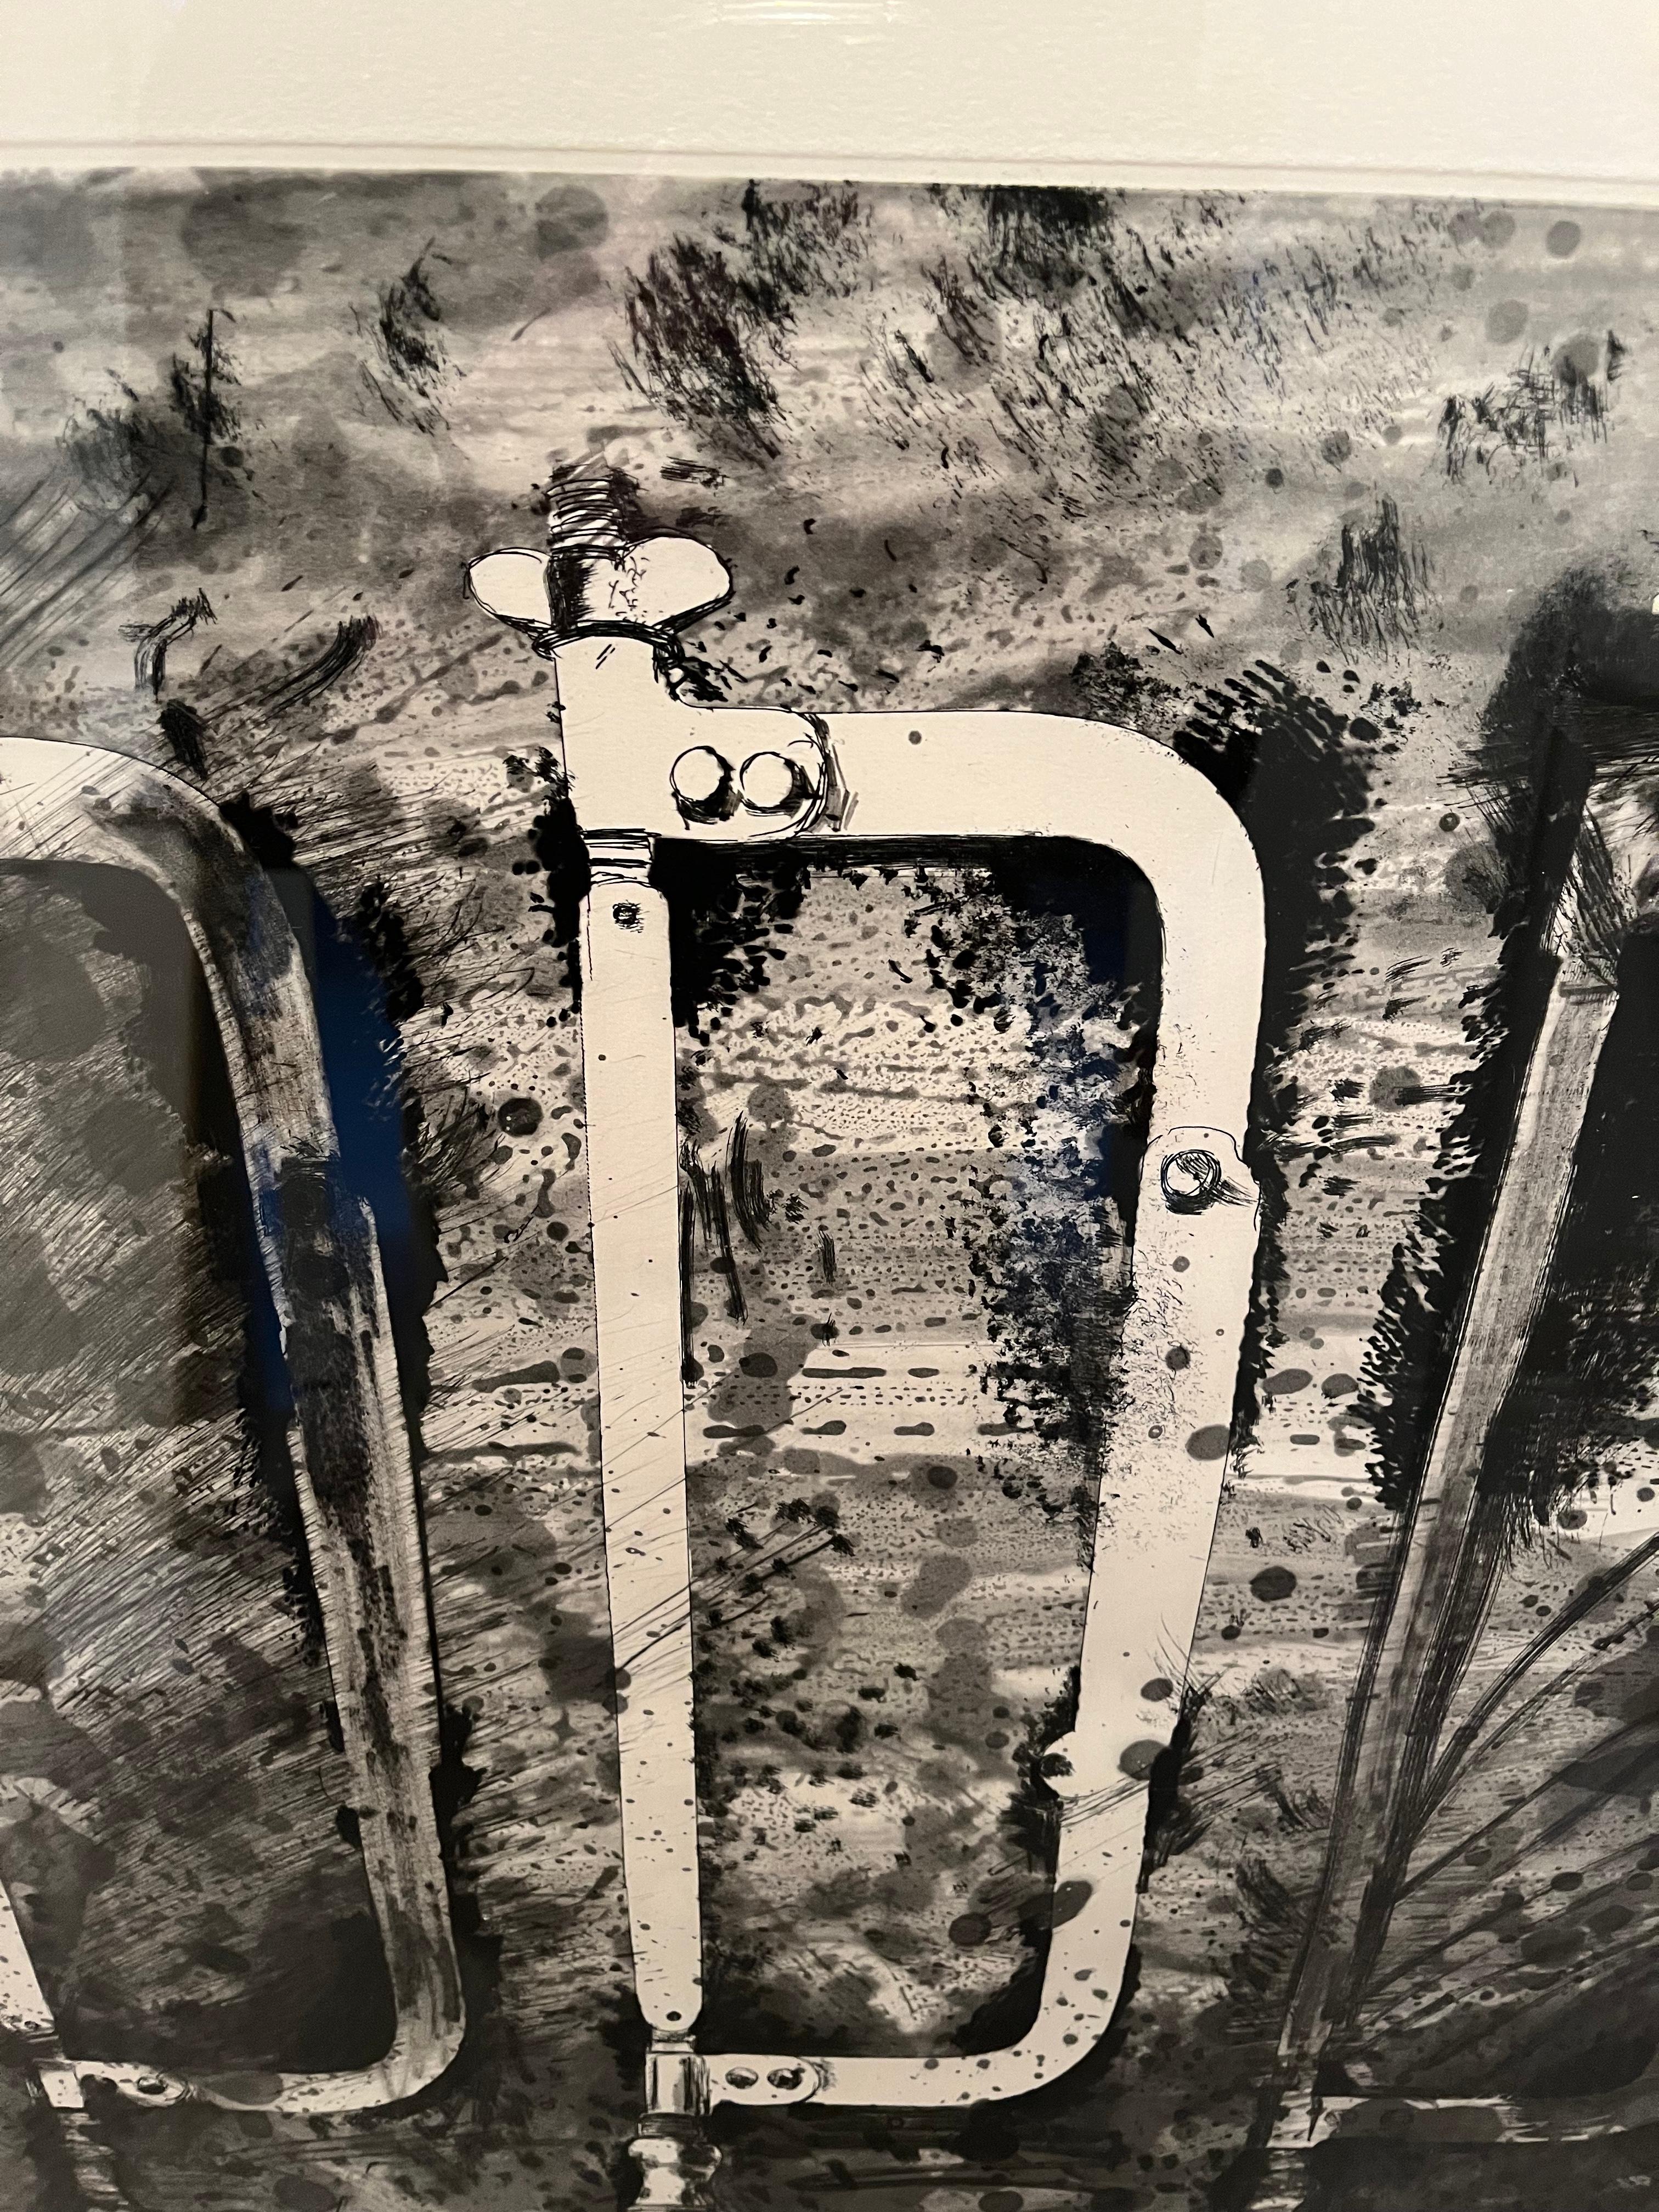  

Jim Dine (geb. 1935)

Die neuen französischen Werkzeuge 2 - Drei Sägen aus der Rue Cler


Radierung, Aquatinta und elektrische Werkzeuge in Farben auf Arches-Papier, 1984
36 x 24-7/8 Zoll (91,4 x 63,2 cm) (Blatt)
Ed. 33/50 (es gab auch 15